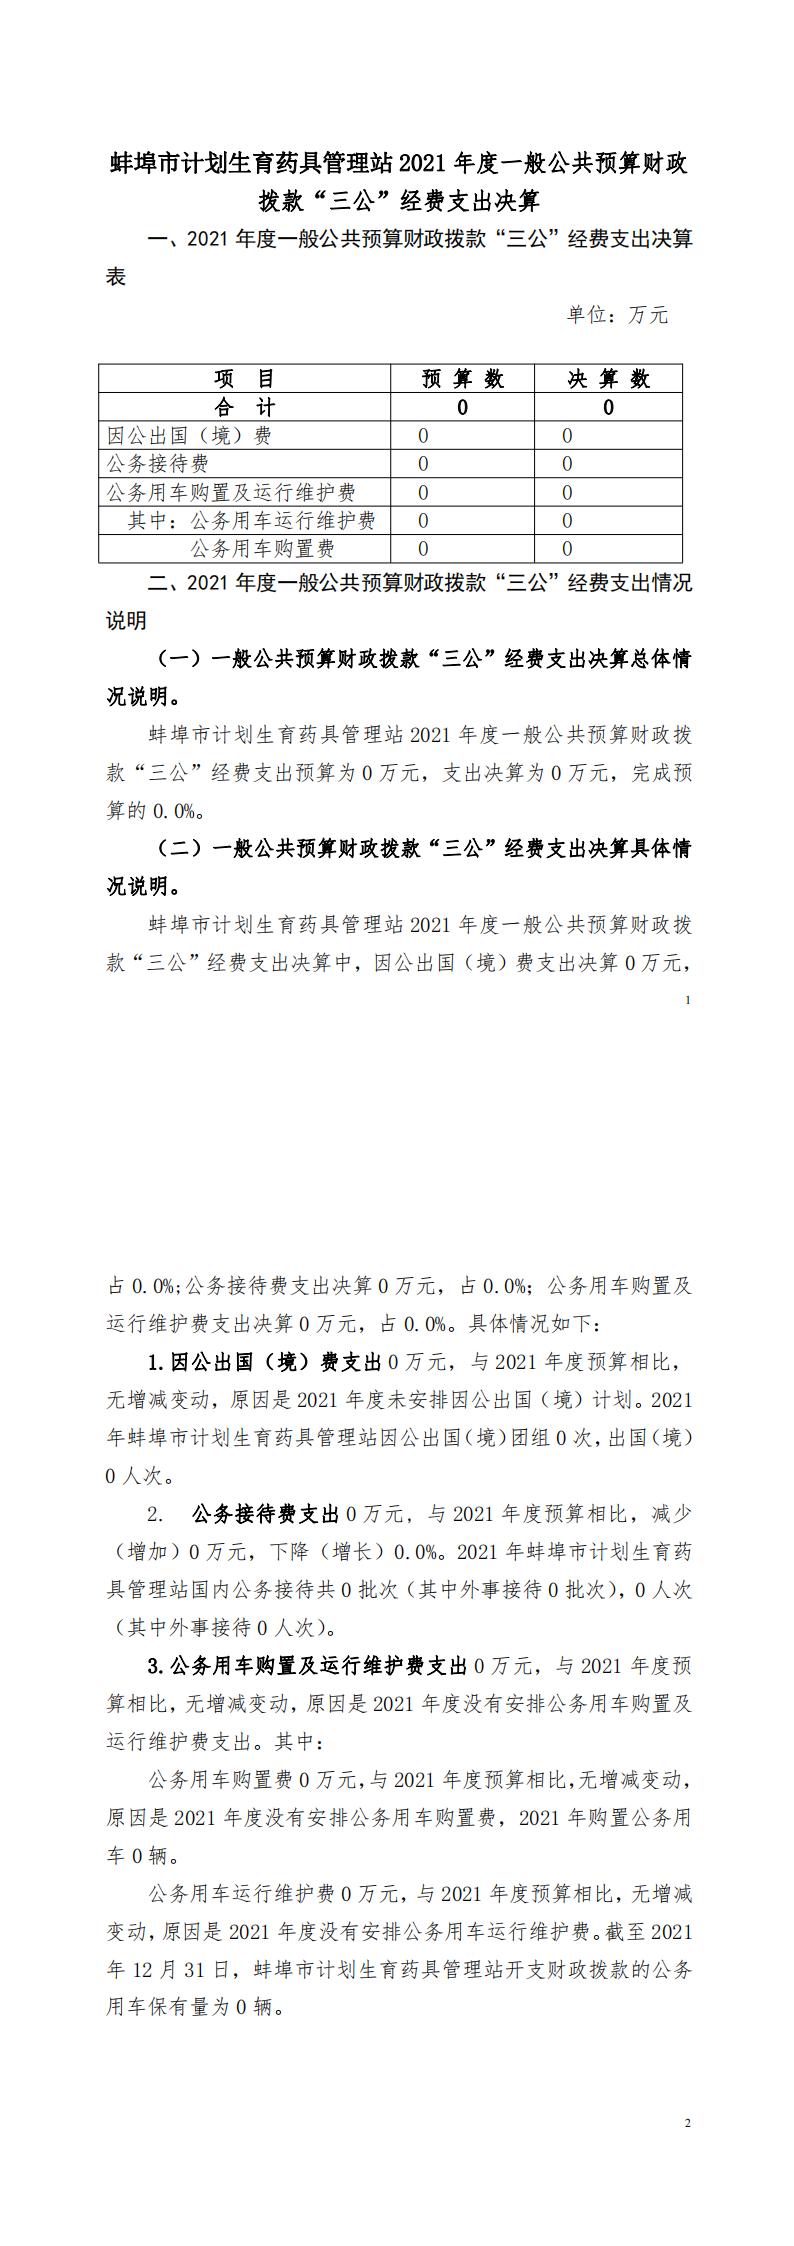 蚌埠市计划生育药具管理站2021年度一般公共预算财政拨款“三公”经费支出决算（新改）_00.jpg